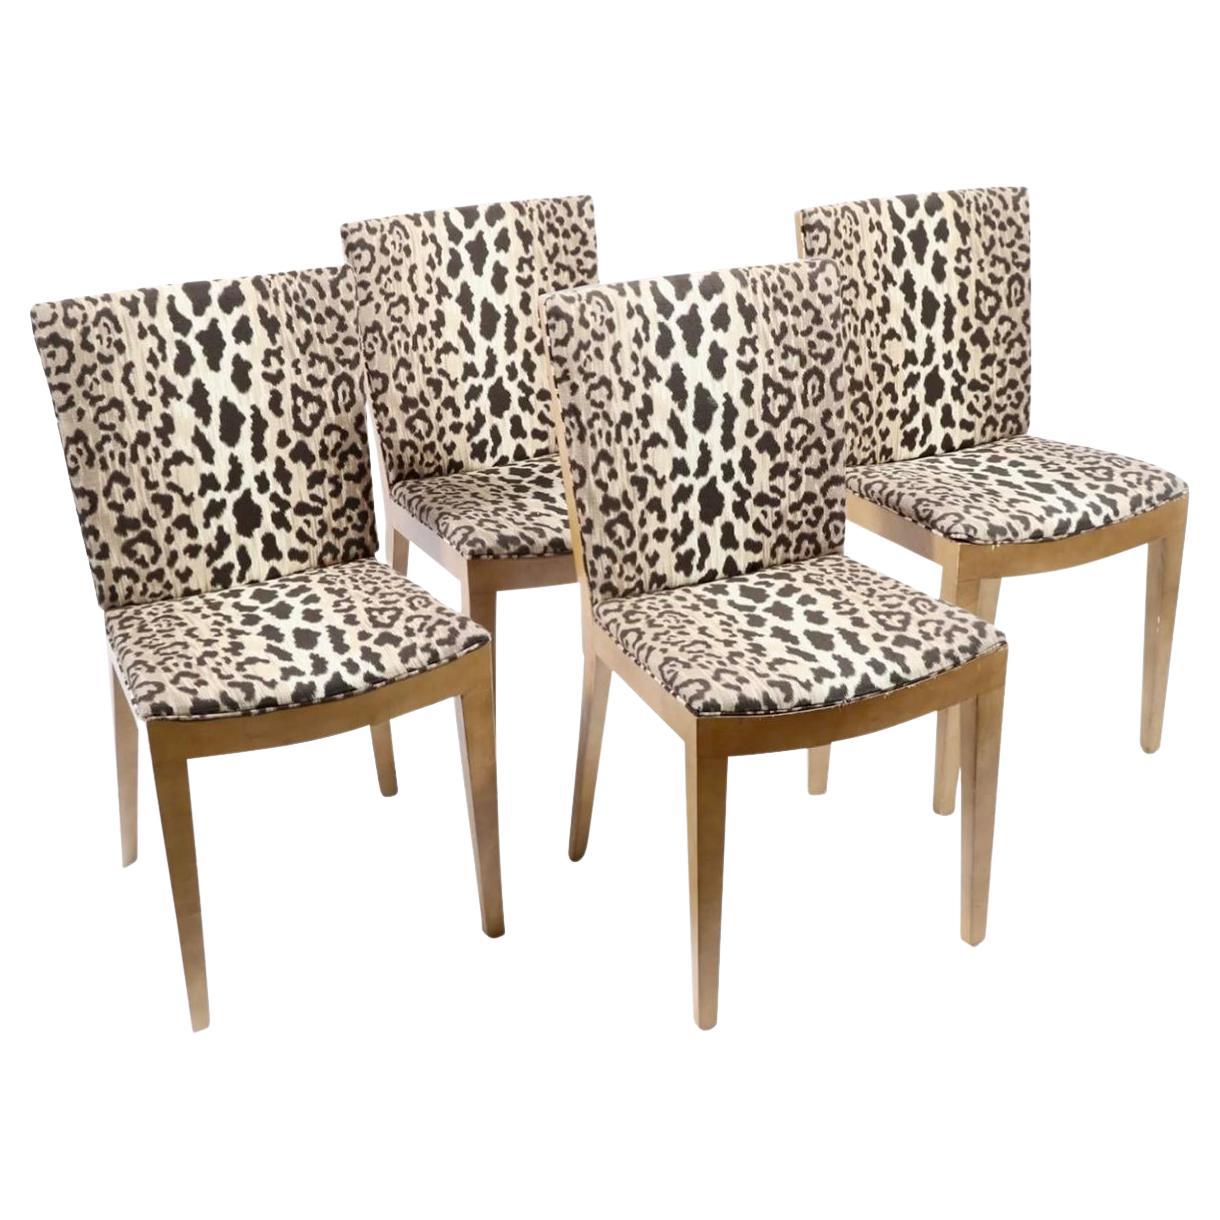 Satz von 4 Karl Springer Jmf-Stühlen aus Ziegenleder mit Cheetah-Sitzen